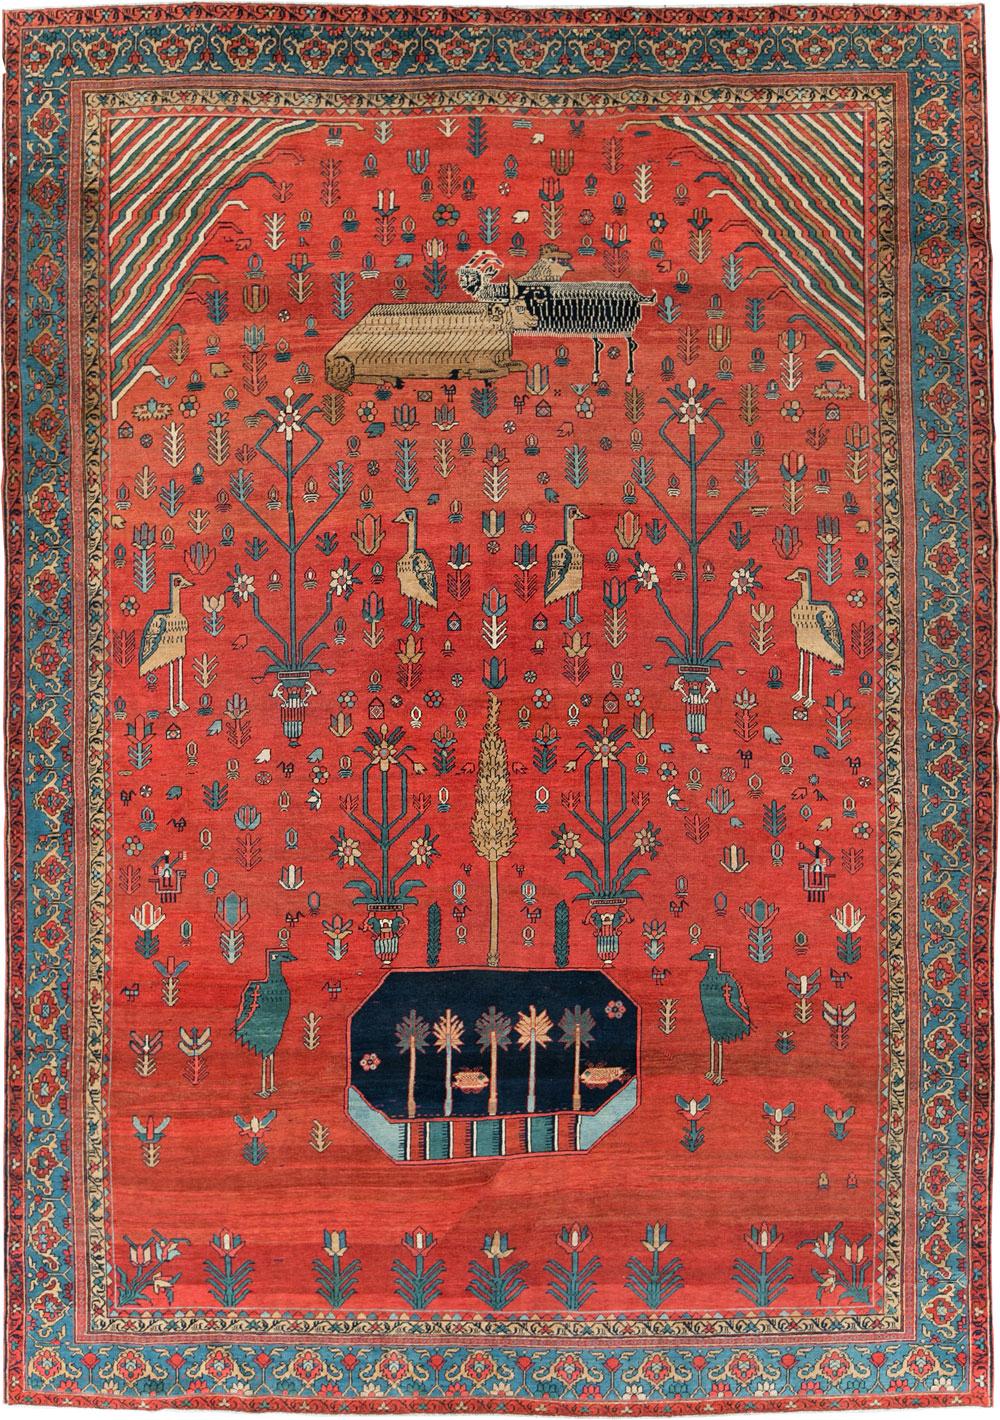 Seltener Bakschaisch-Teppich mit Tierdarstellungen aus dem frühen 20. Jahrhundert, auf dem verschiedene Schafe und Tauben auf einem roten Feld schweben

Maße: 9'9'' x 14'

Die besten Bakschaisch-Teppiche bieten eine einzigartige Kombination aus